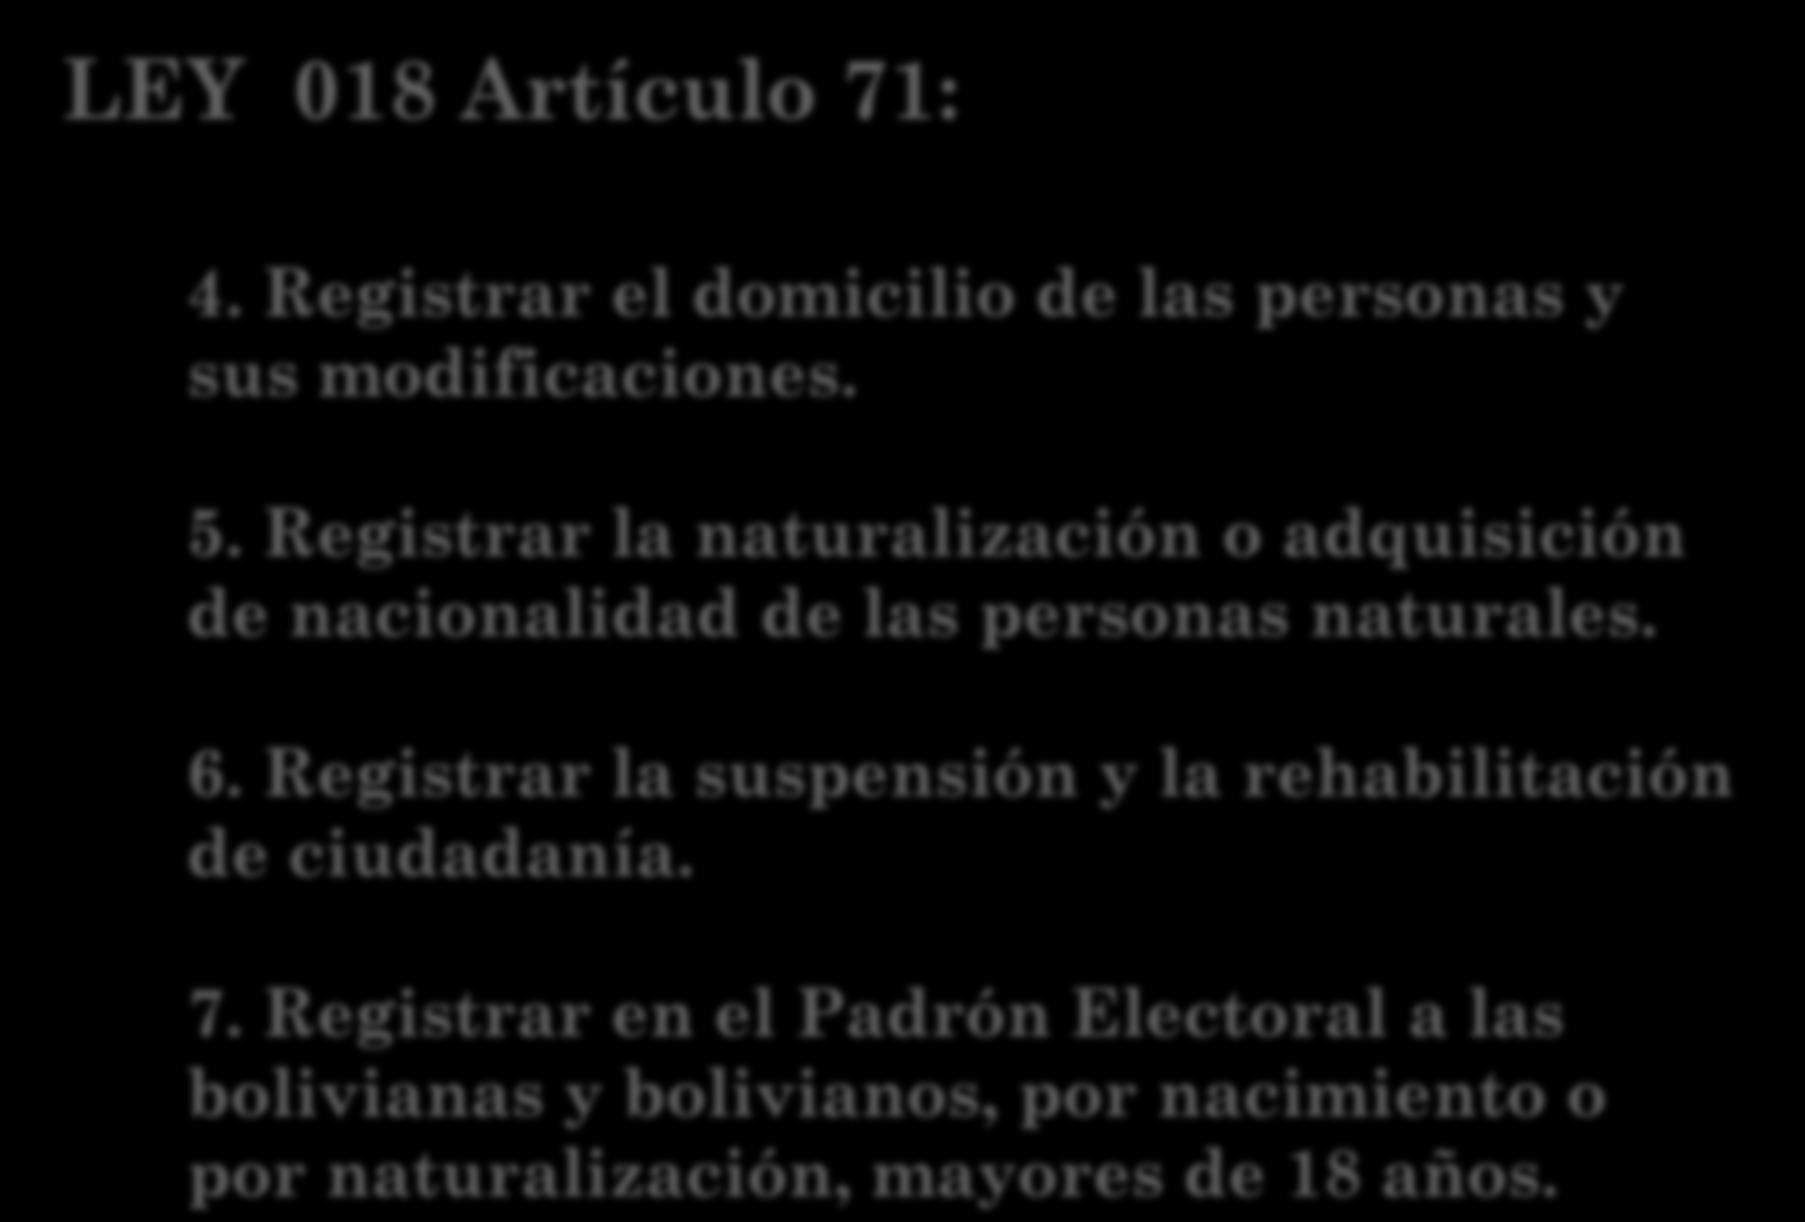 LEY 018 Artículo 71: 4. Registrar el domicilio de las personas y sus modificaciones. 5. Registrar la naturalización o adquisición de nacionalidad de las personas naturales. 6.